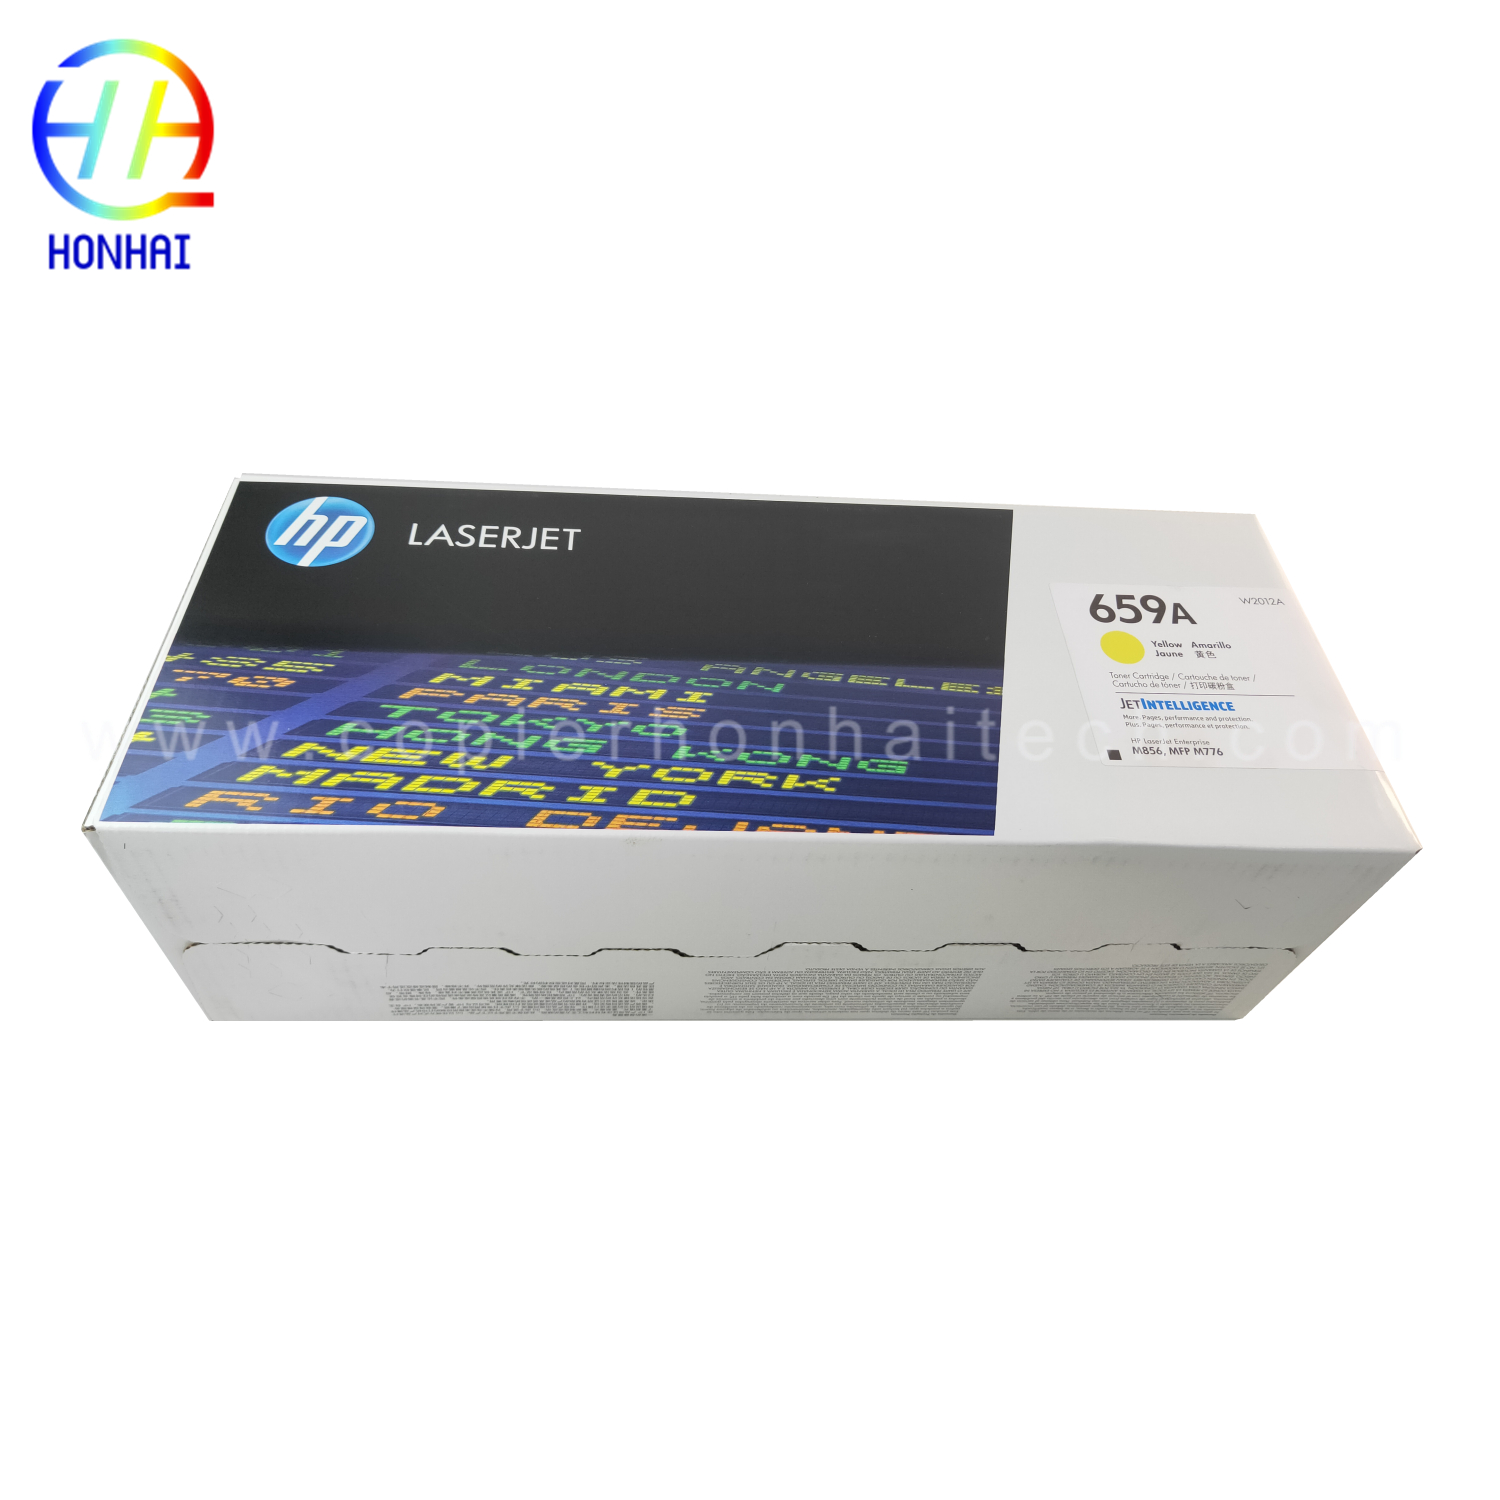 https://www.copierhonhaitech.com/toner-cartridge-for-hp-659a-color-laserjet-enterprise-flow-mfp-m776z-m776zs-m776dn-product/